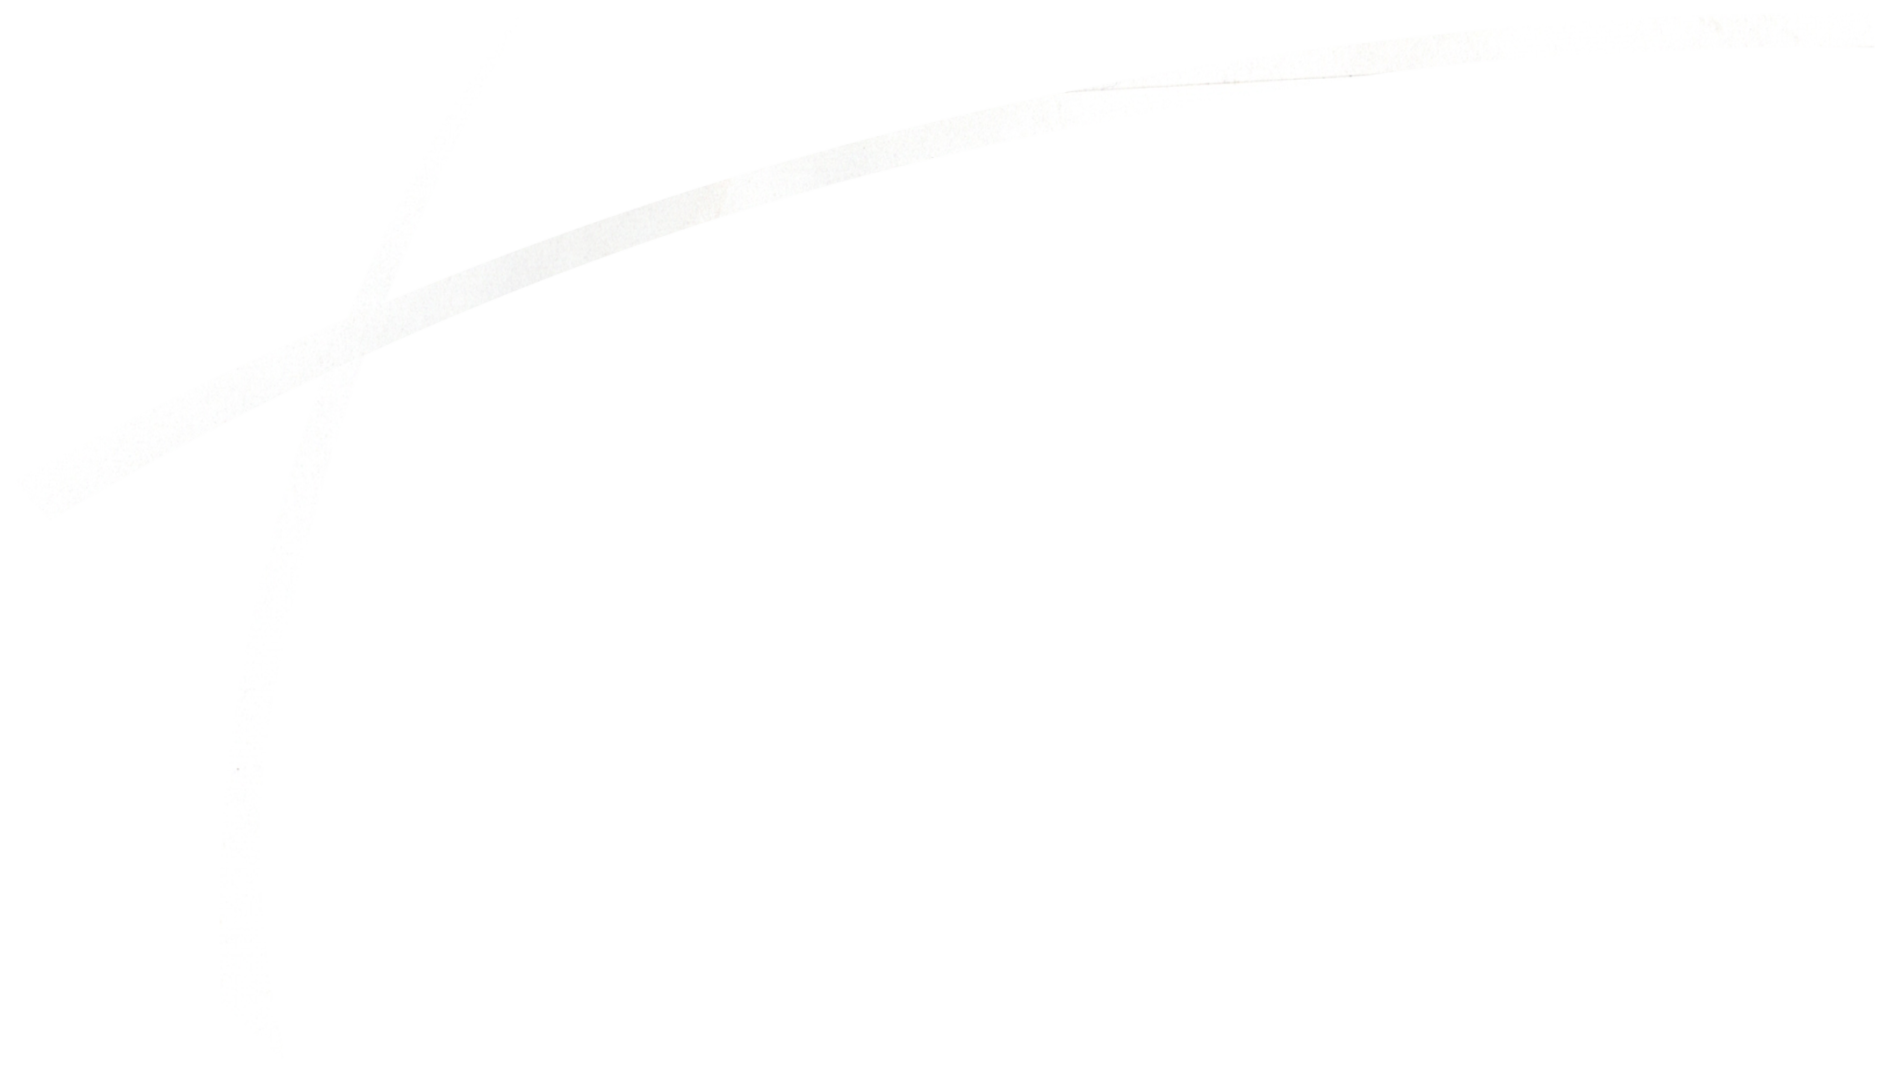 Teri Interiors Design Consultants Logo